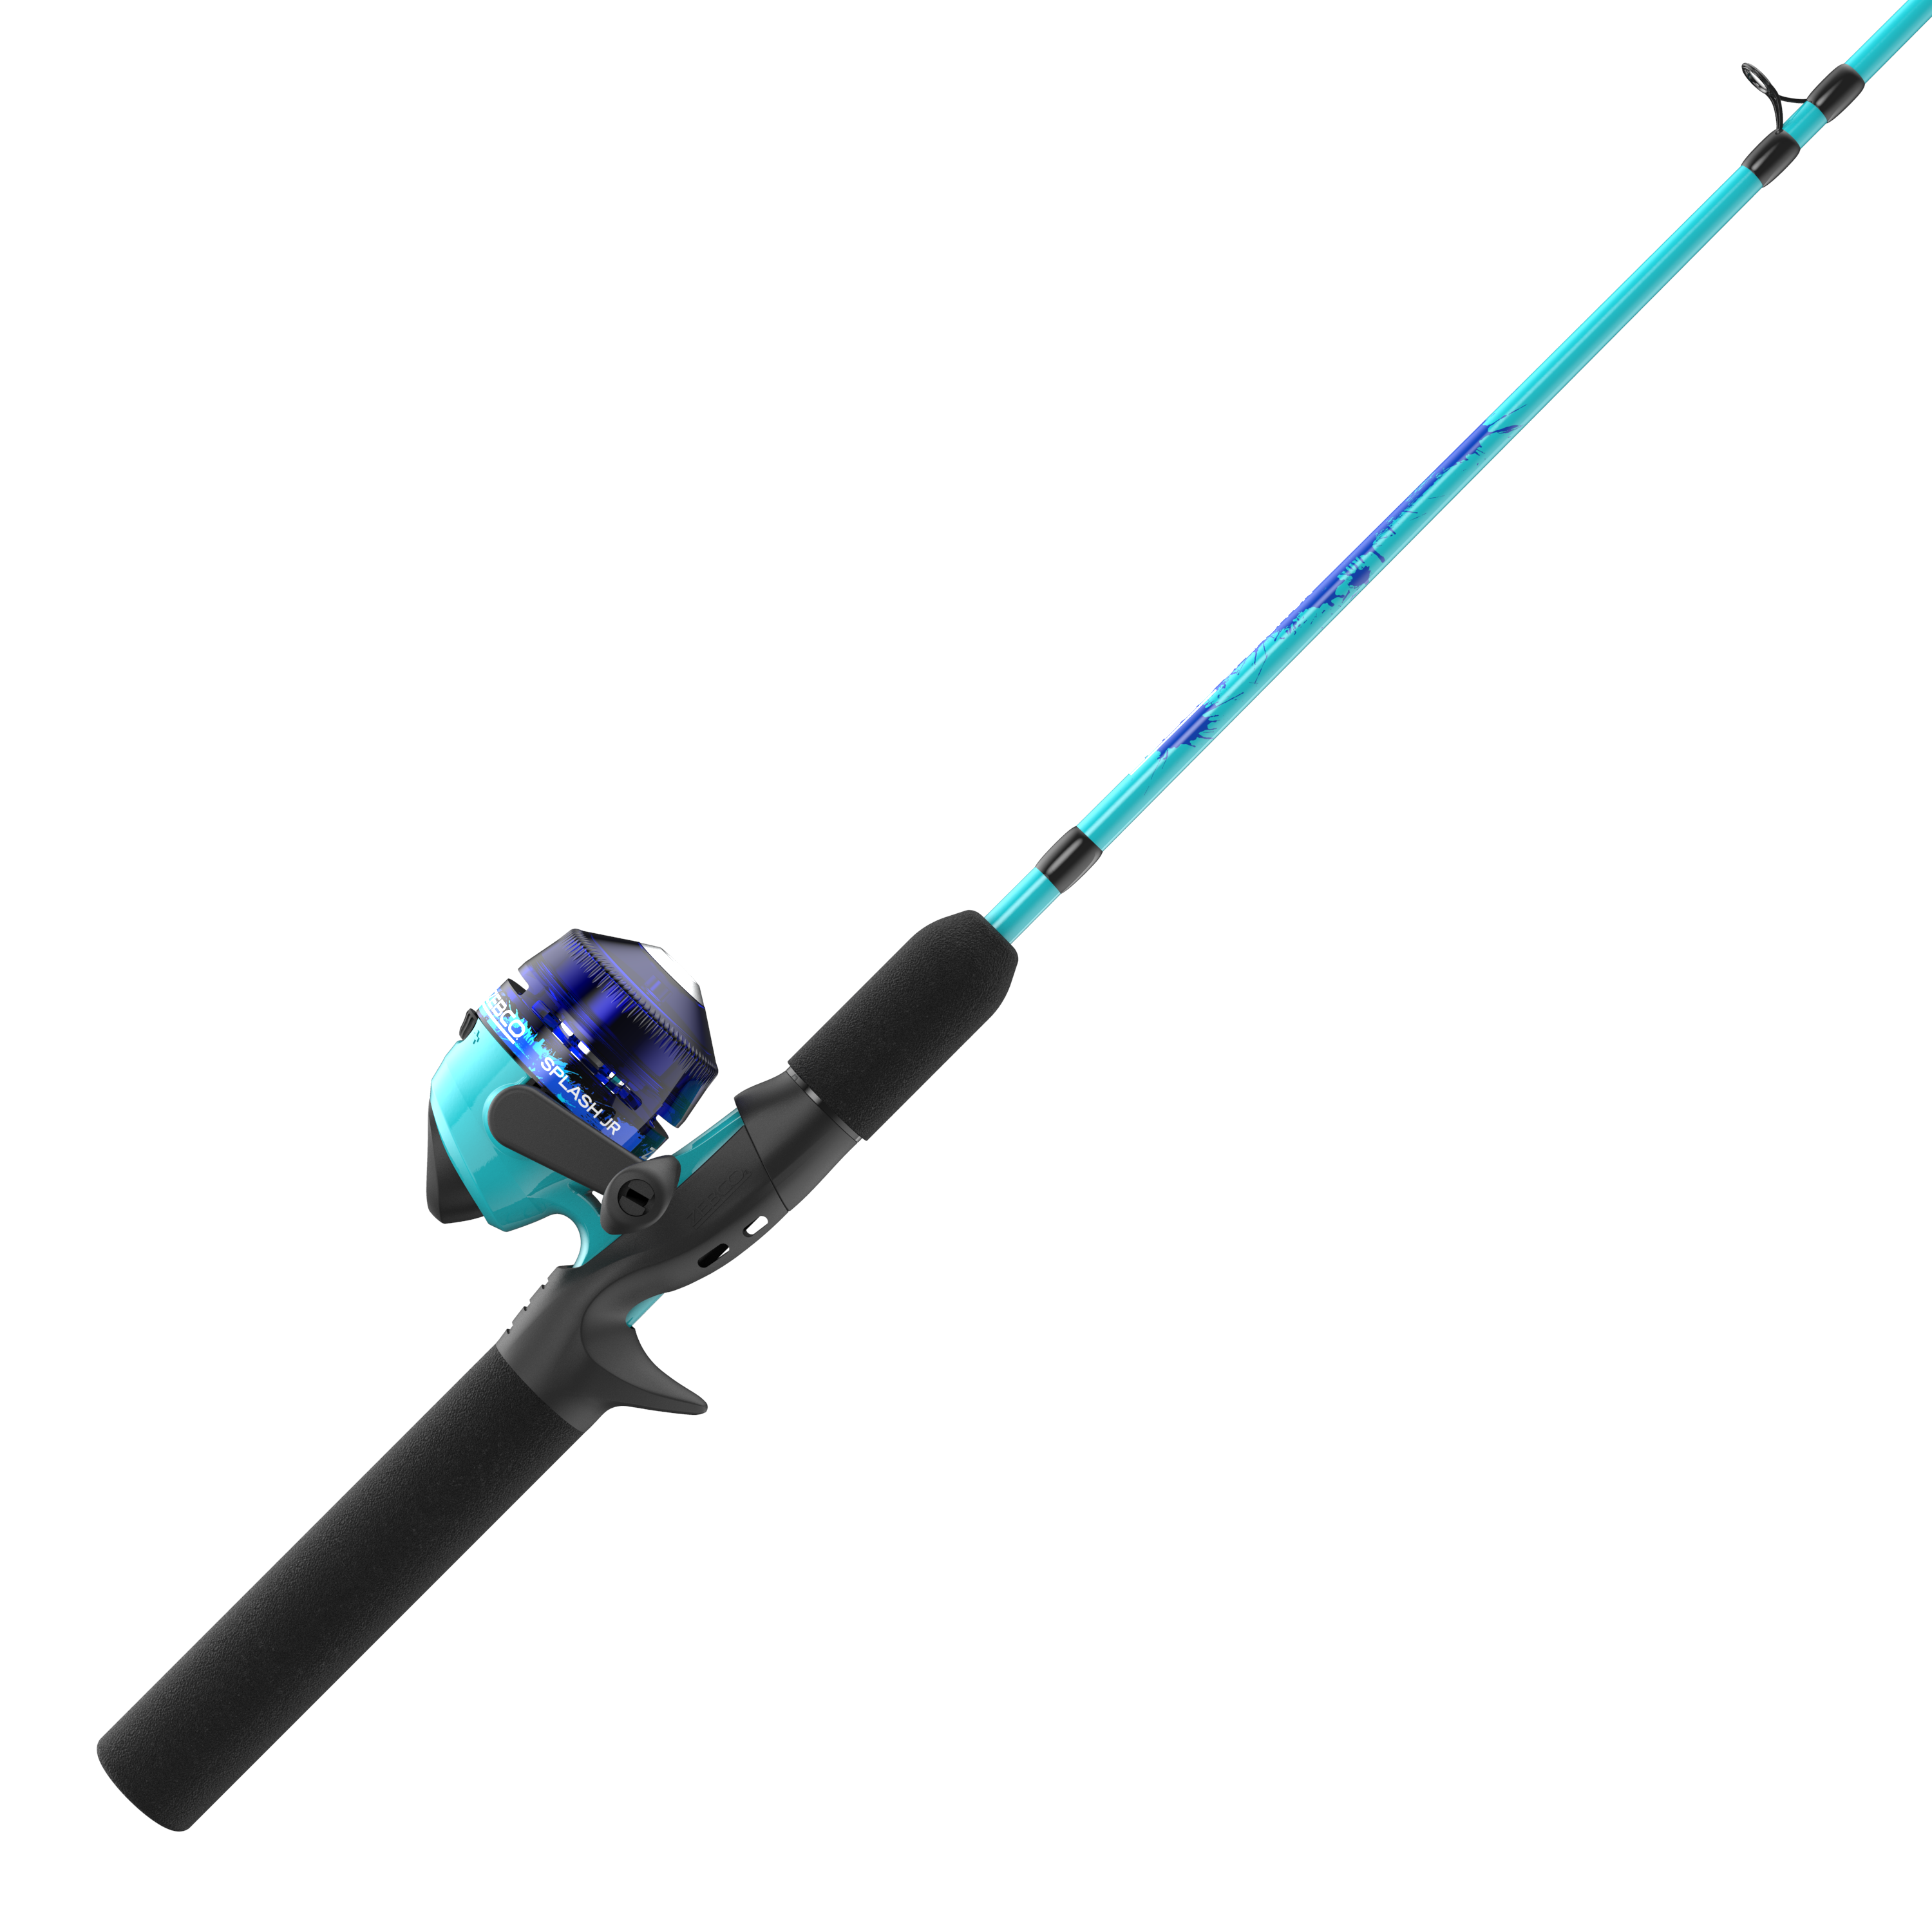 EG [Free Ship]54pcs Kids Fishing Pole with Reel Portable Telescopic Fishing  Rod and Reel Combo Kit Kids Fishing Set